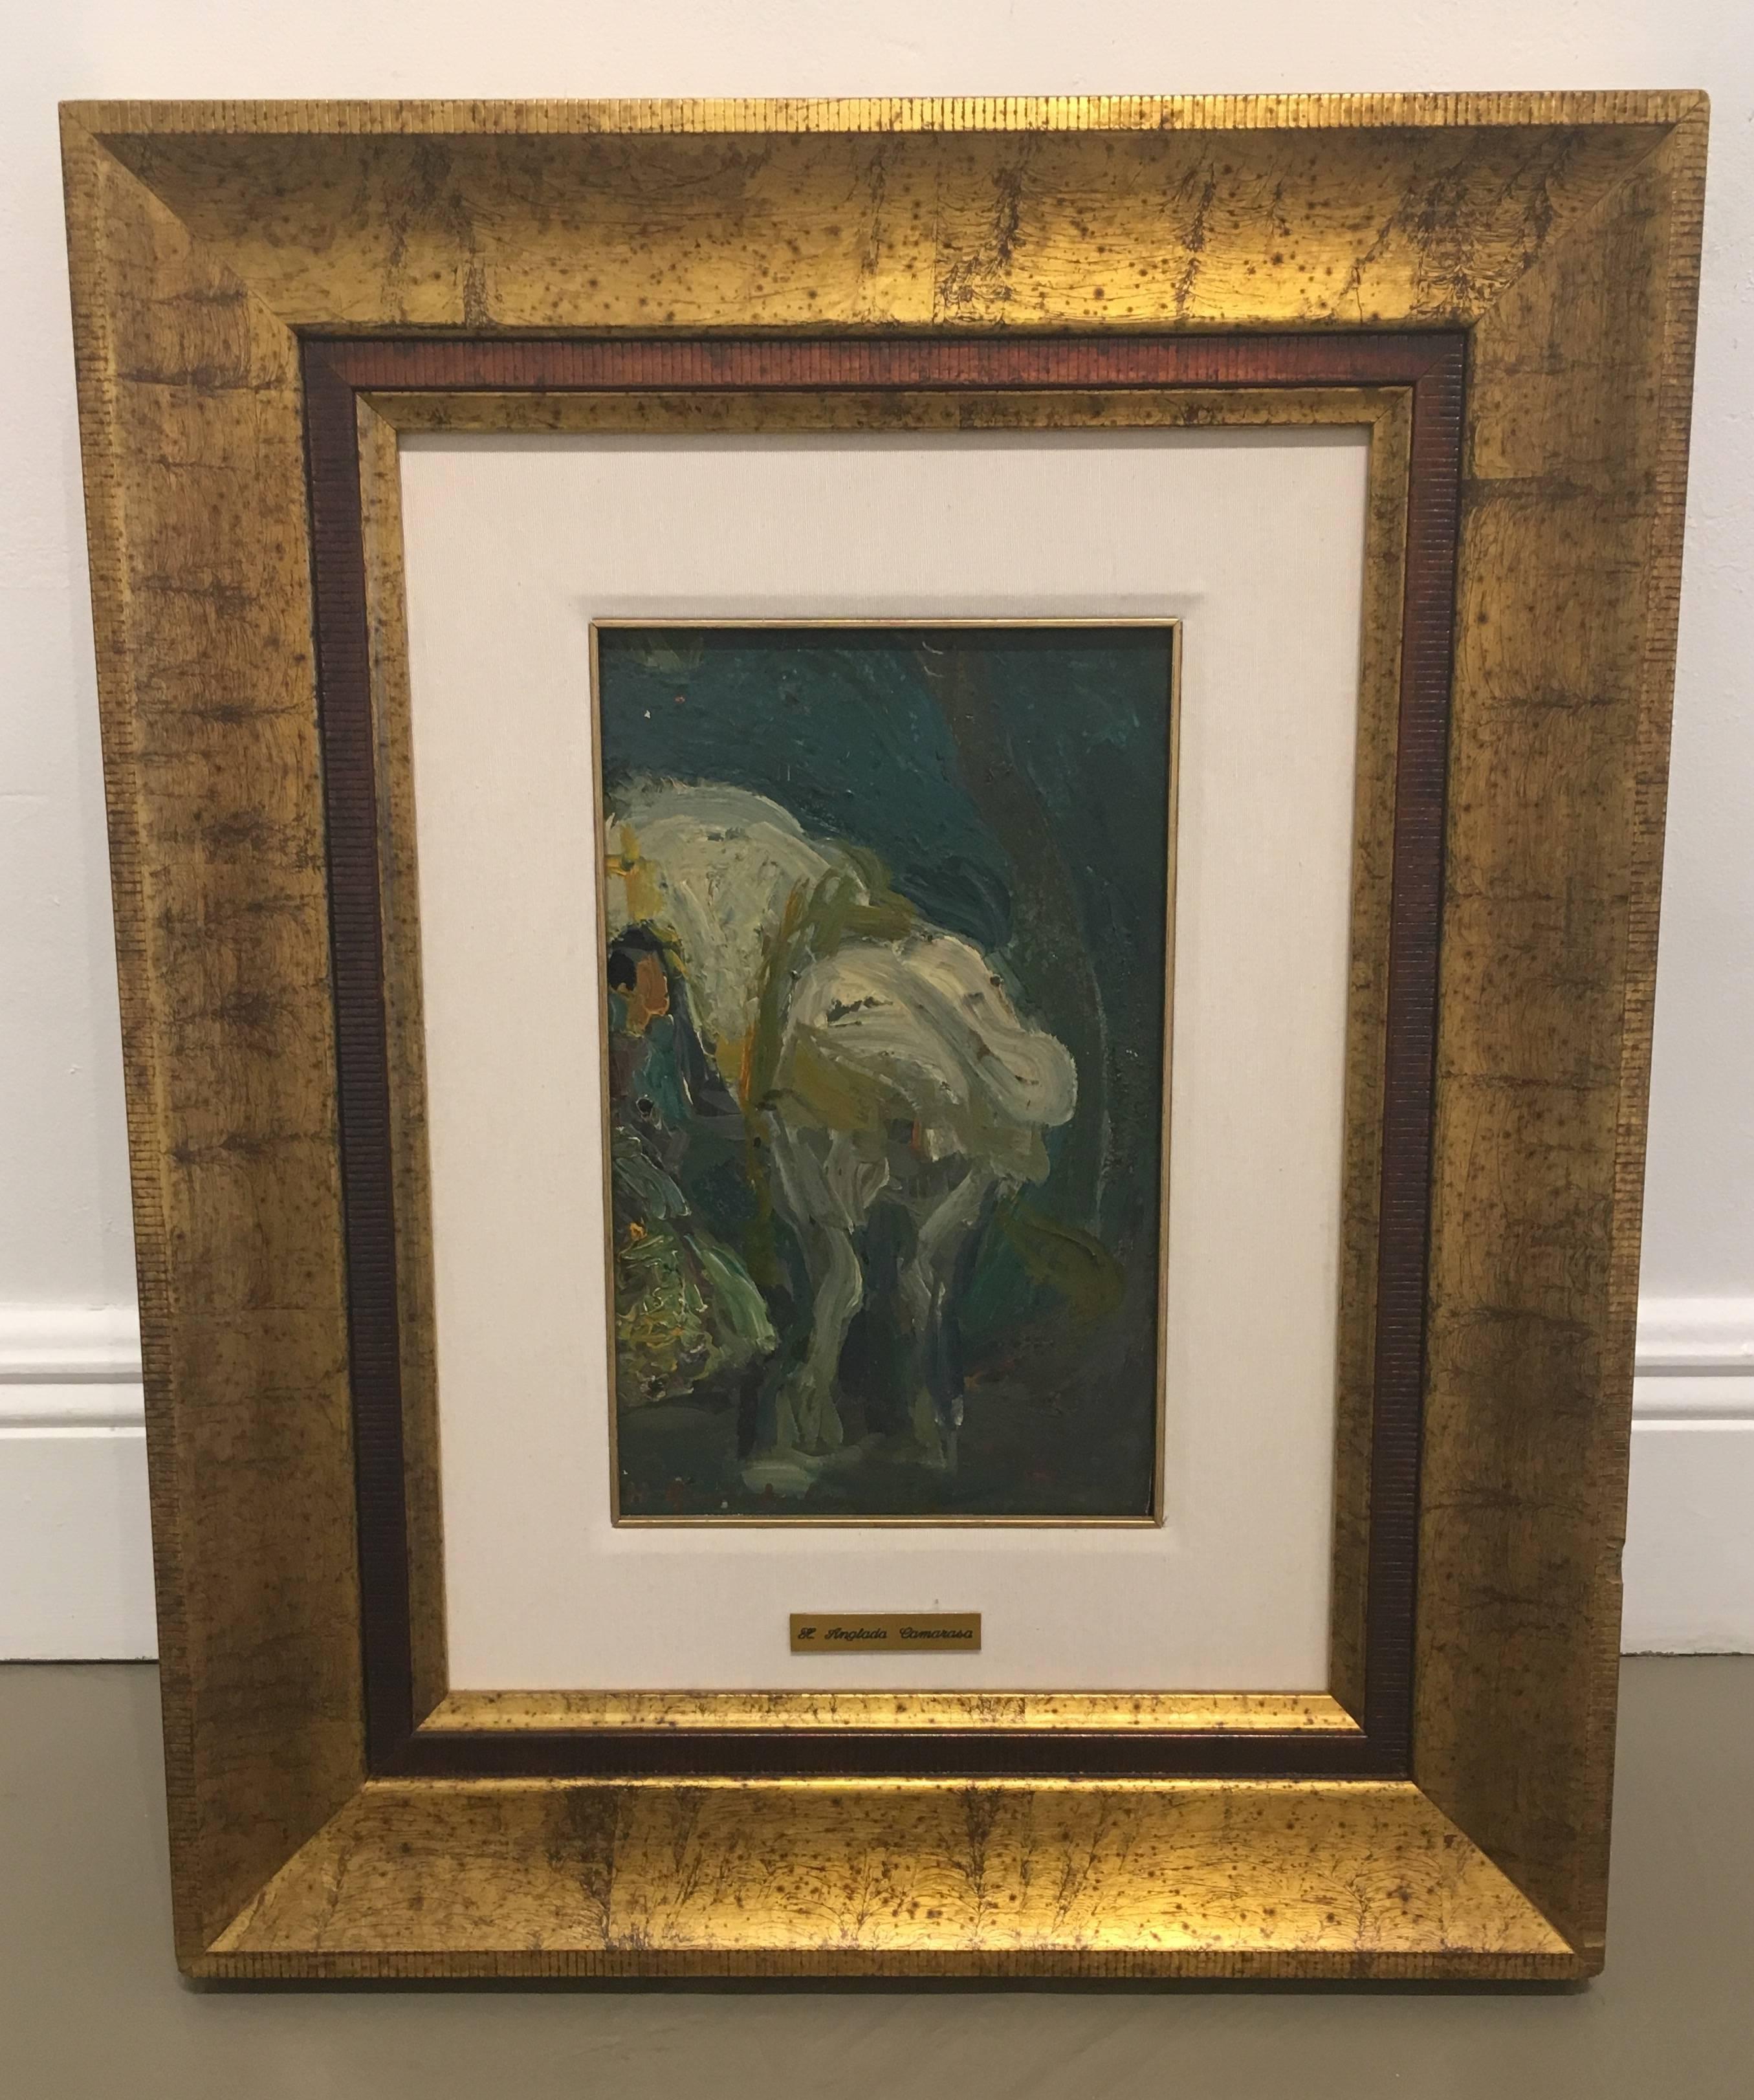 horse and gypsy. time of Paris. Original Certificate impressionist painting - Impressionist Painting by Hermenegildo Anglada Camarasa